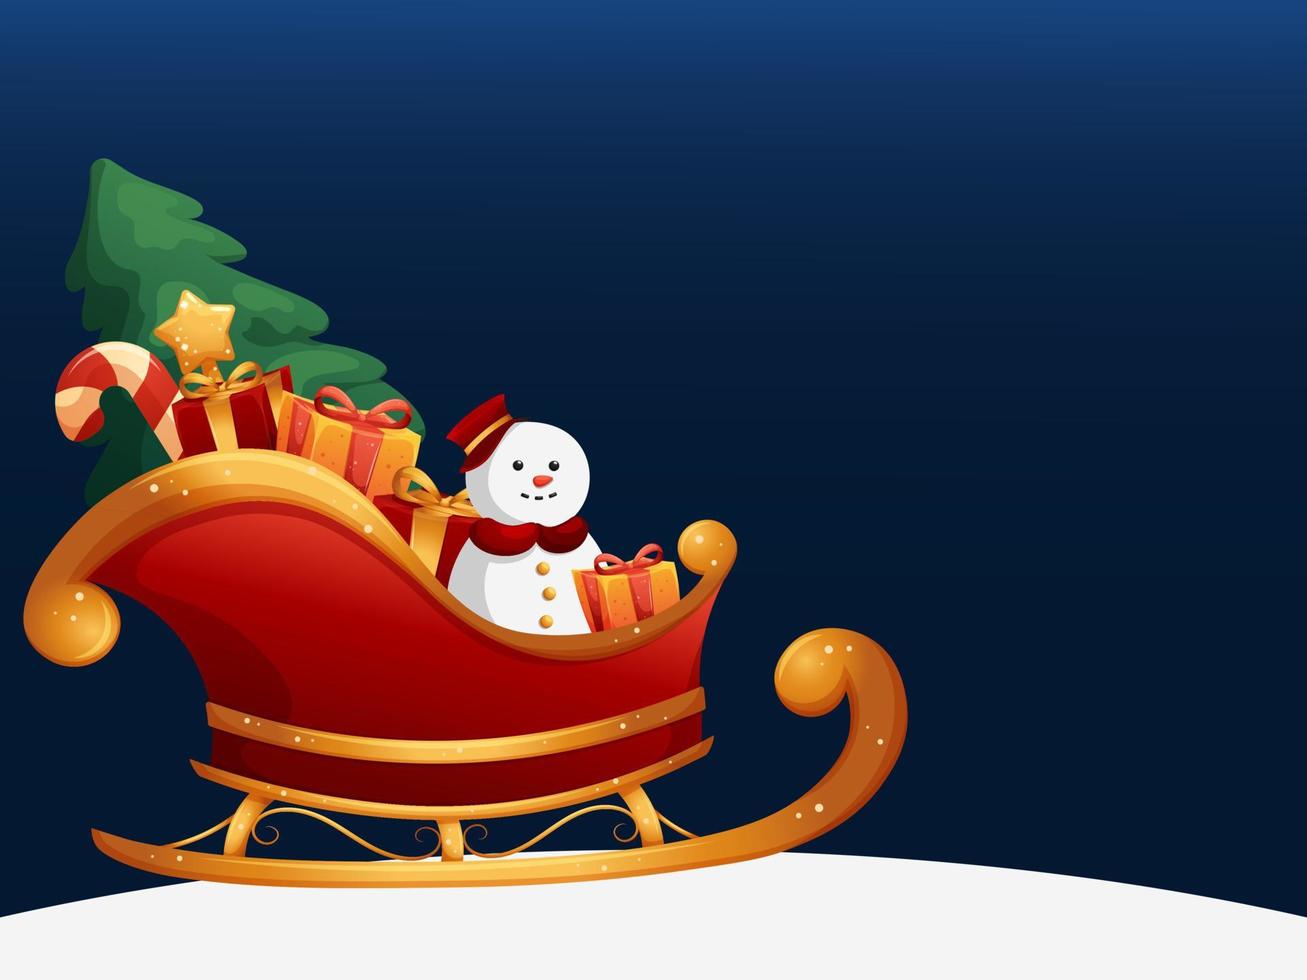 fond d'hiver avec traîneau du père noël dessin animé, bonhomme de neige, arbre de noël et cadeaux sur fond bleu foncé vecteur